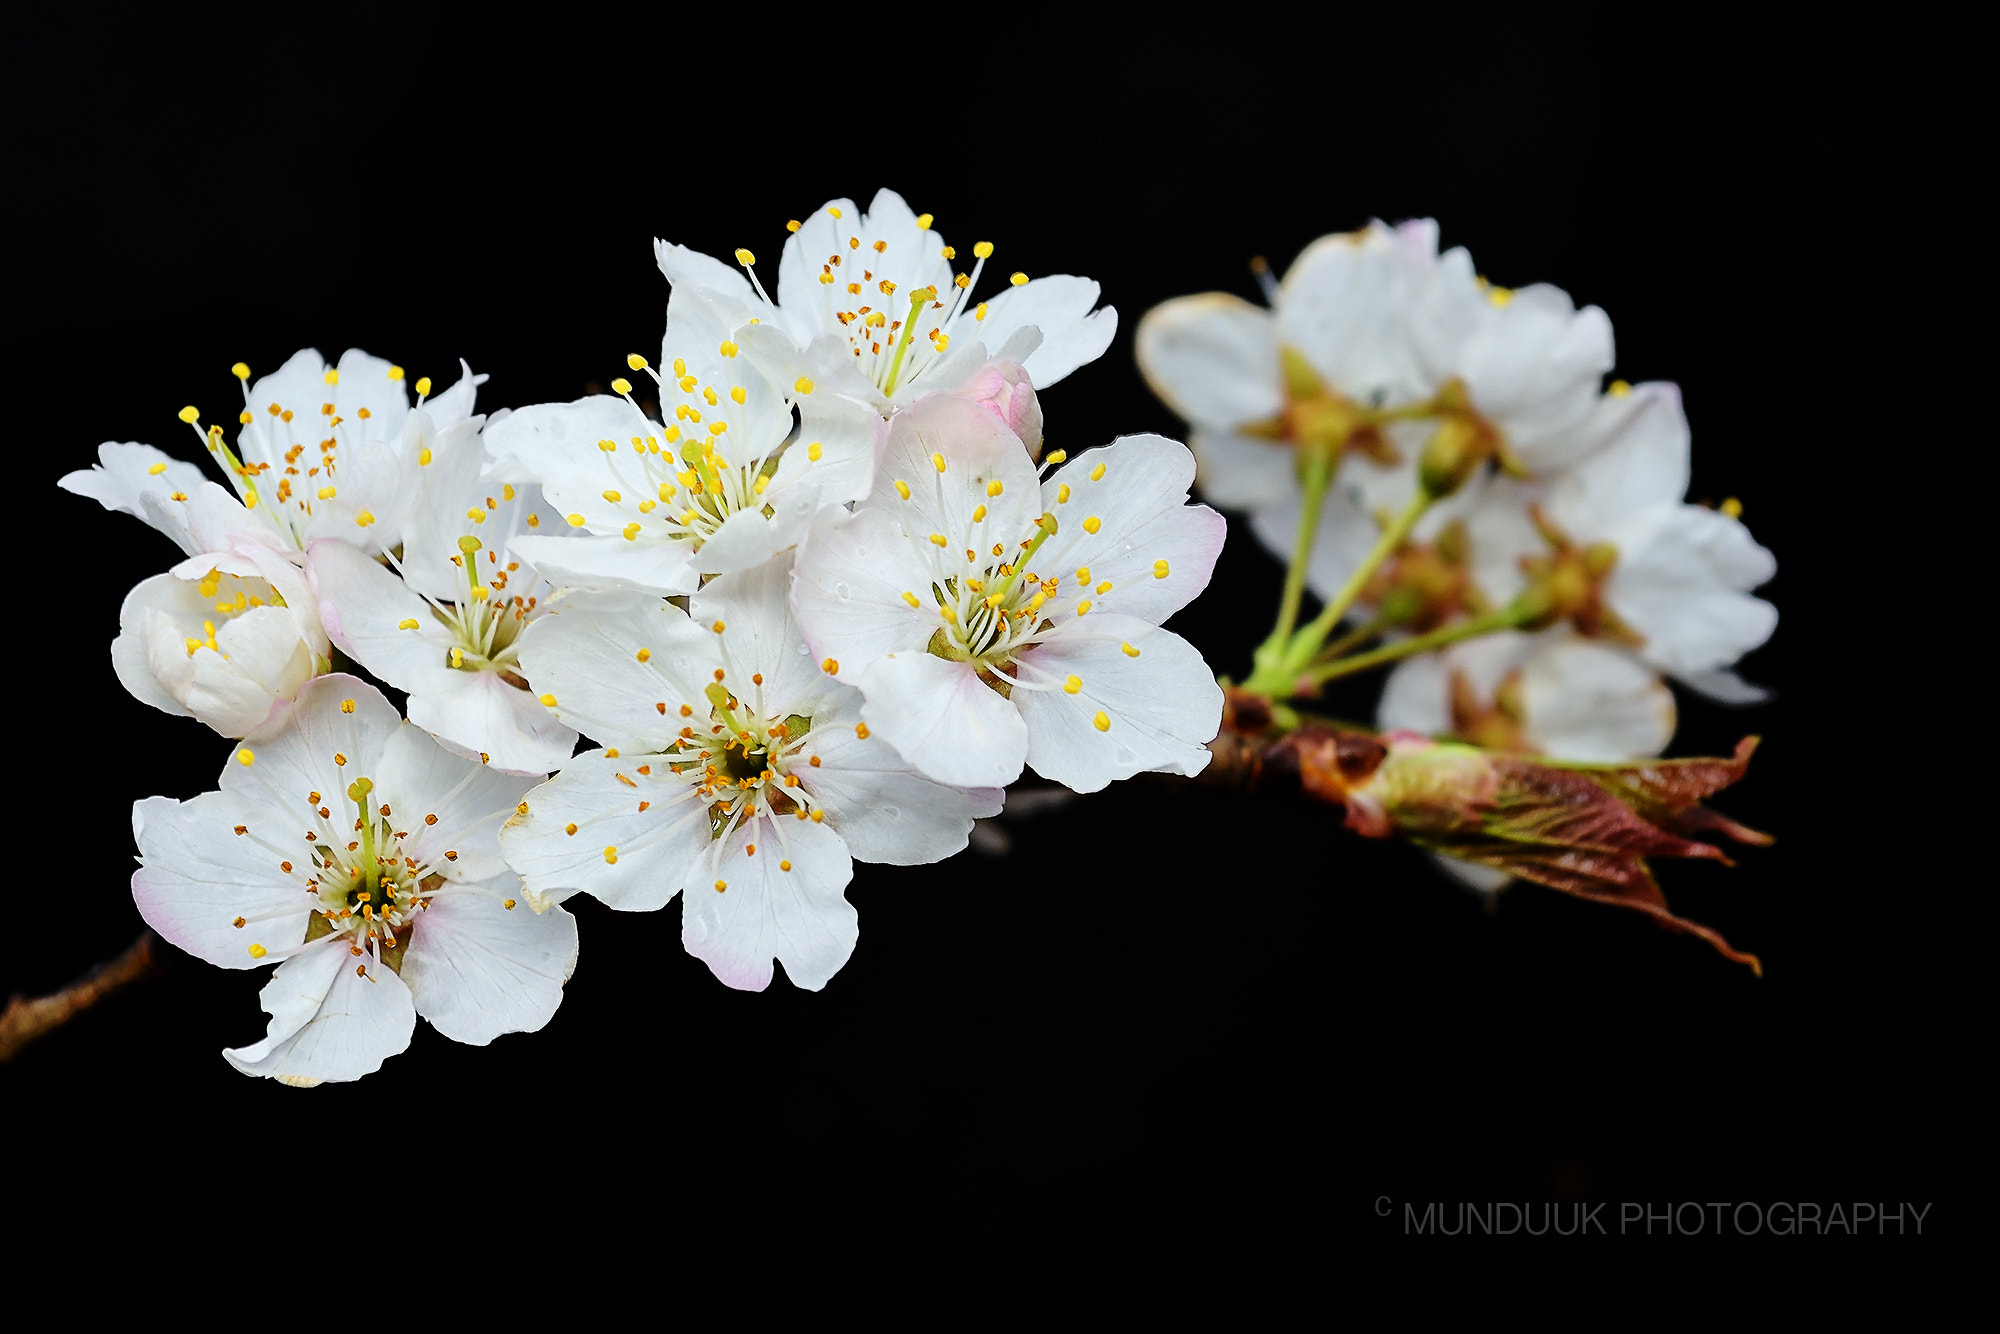 Nikon D810 + Nikon AF-S DX Nikkor 18-55mm F3.5-5.6G VR sample photo. Cherry blossom on black photography